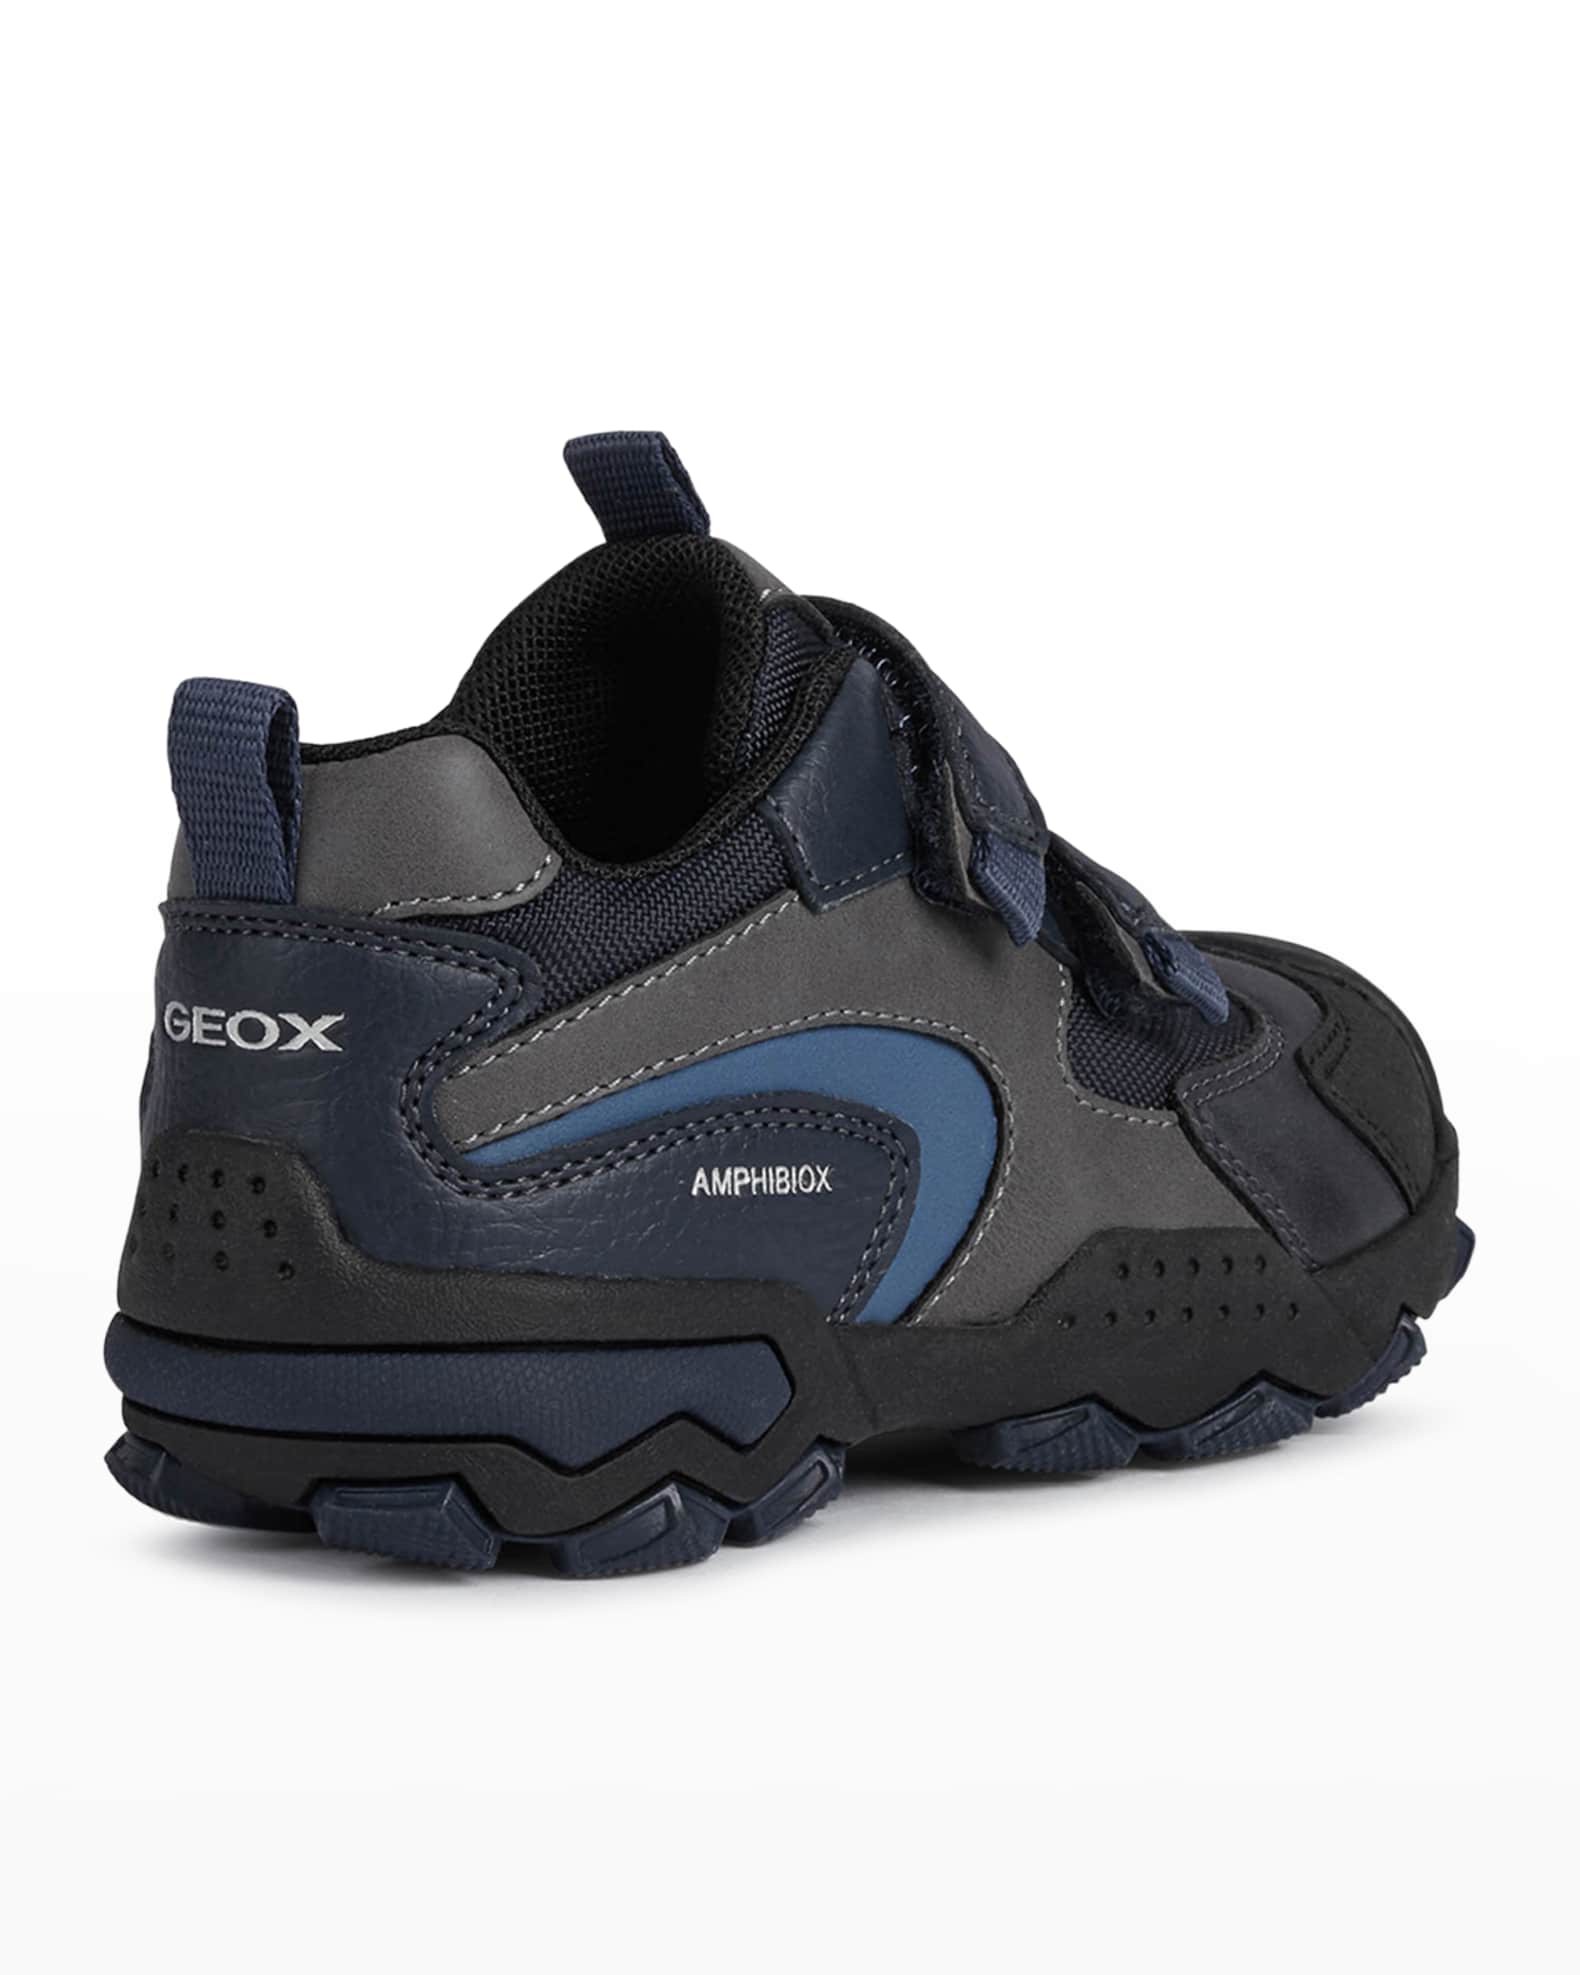 Geox Boy's Abx Mesh Low-Top Sneakers, Toddler/Kids Neiman